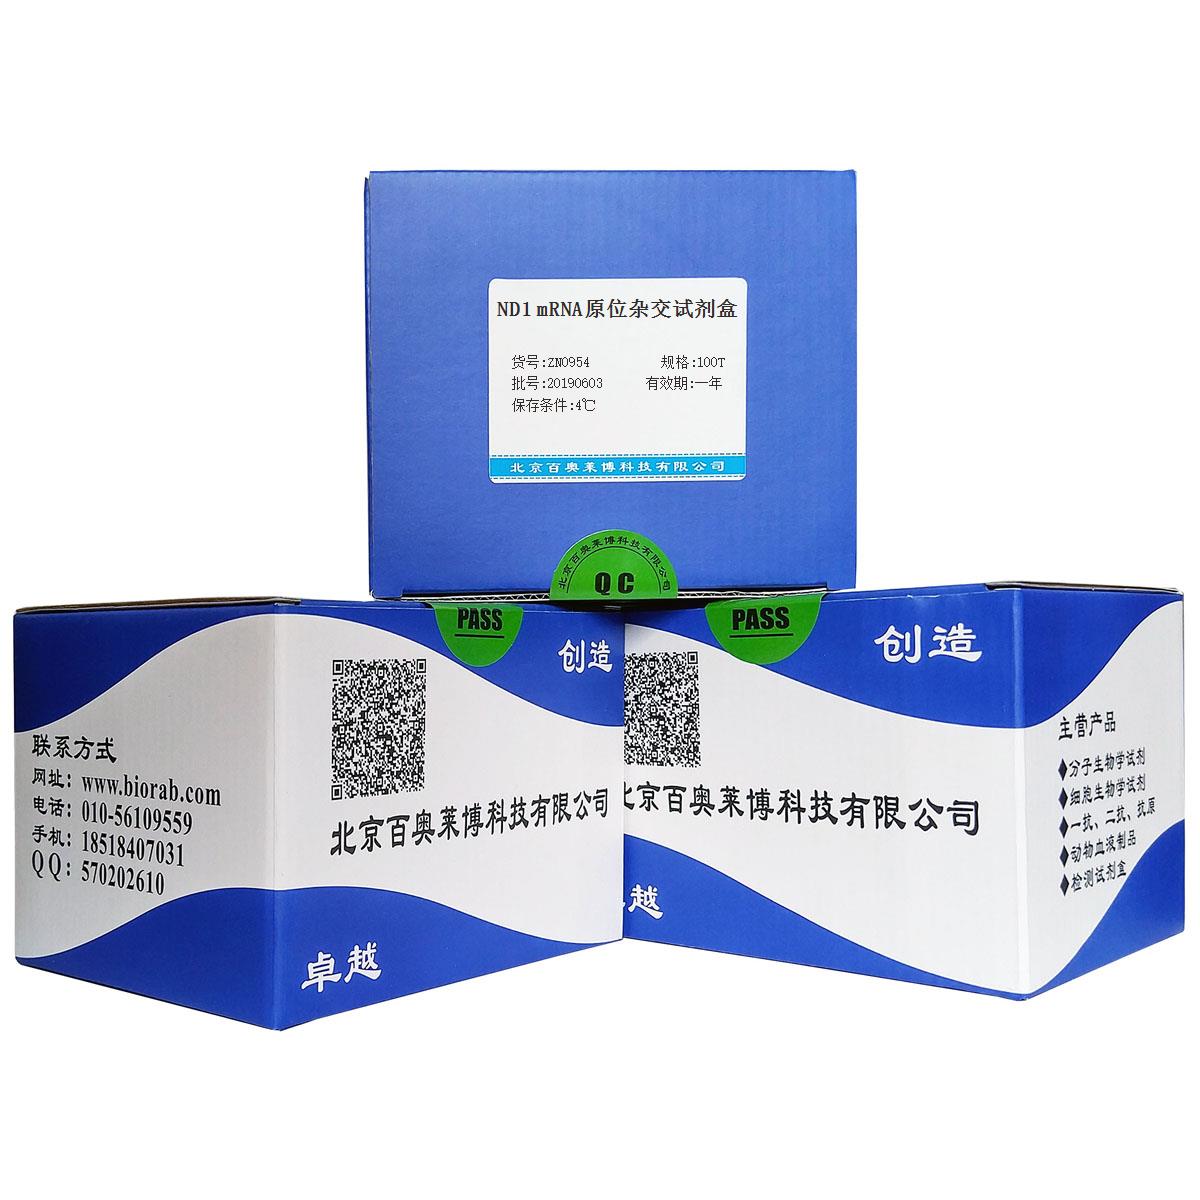 ND1 mRNA原位杂交试剂盒北京供应商